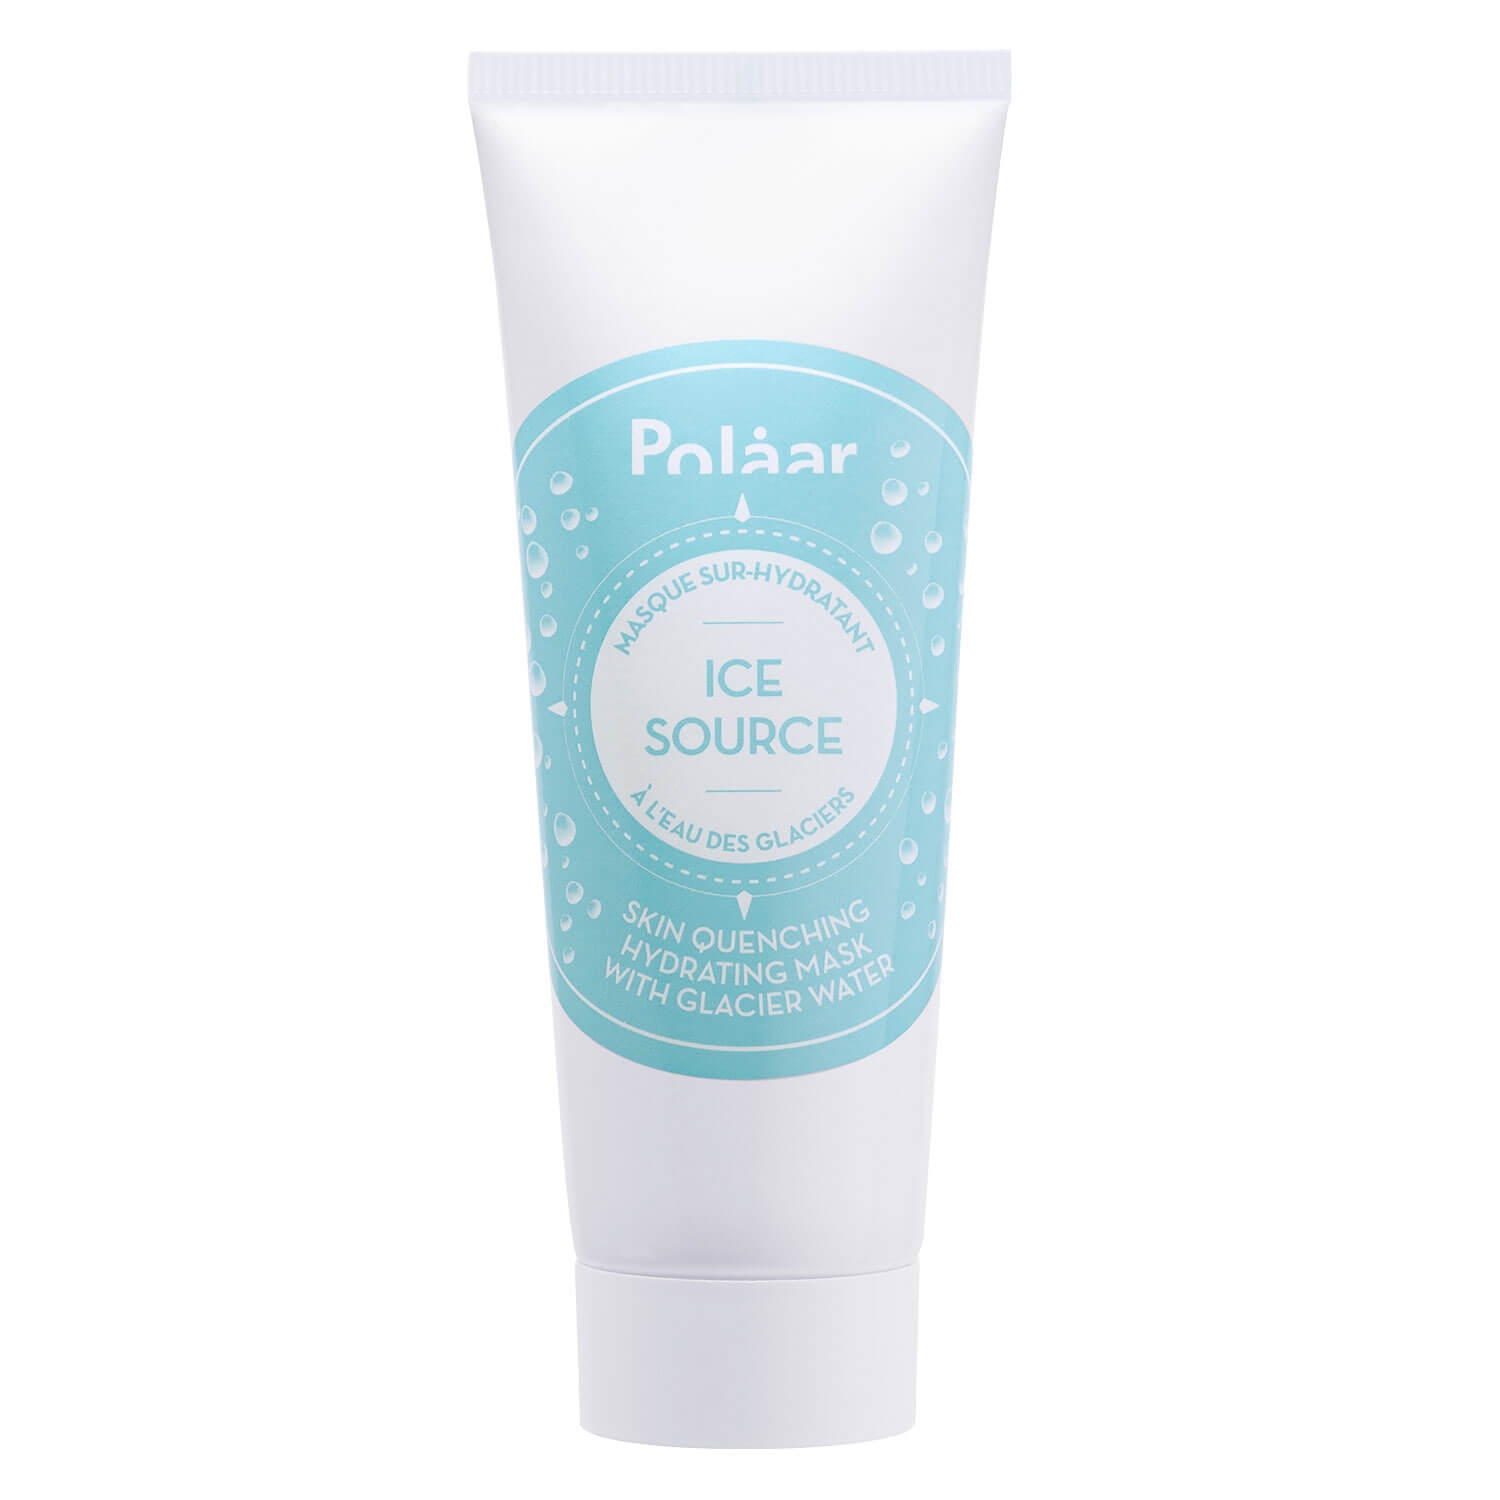 Produktbild von Polaar - Ice Source Skin Quenching Hydrating Mask